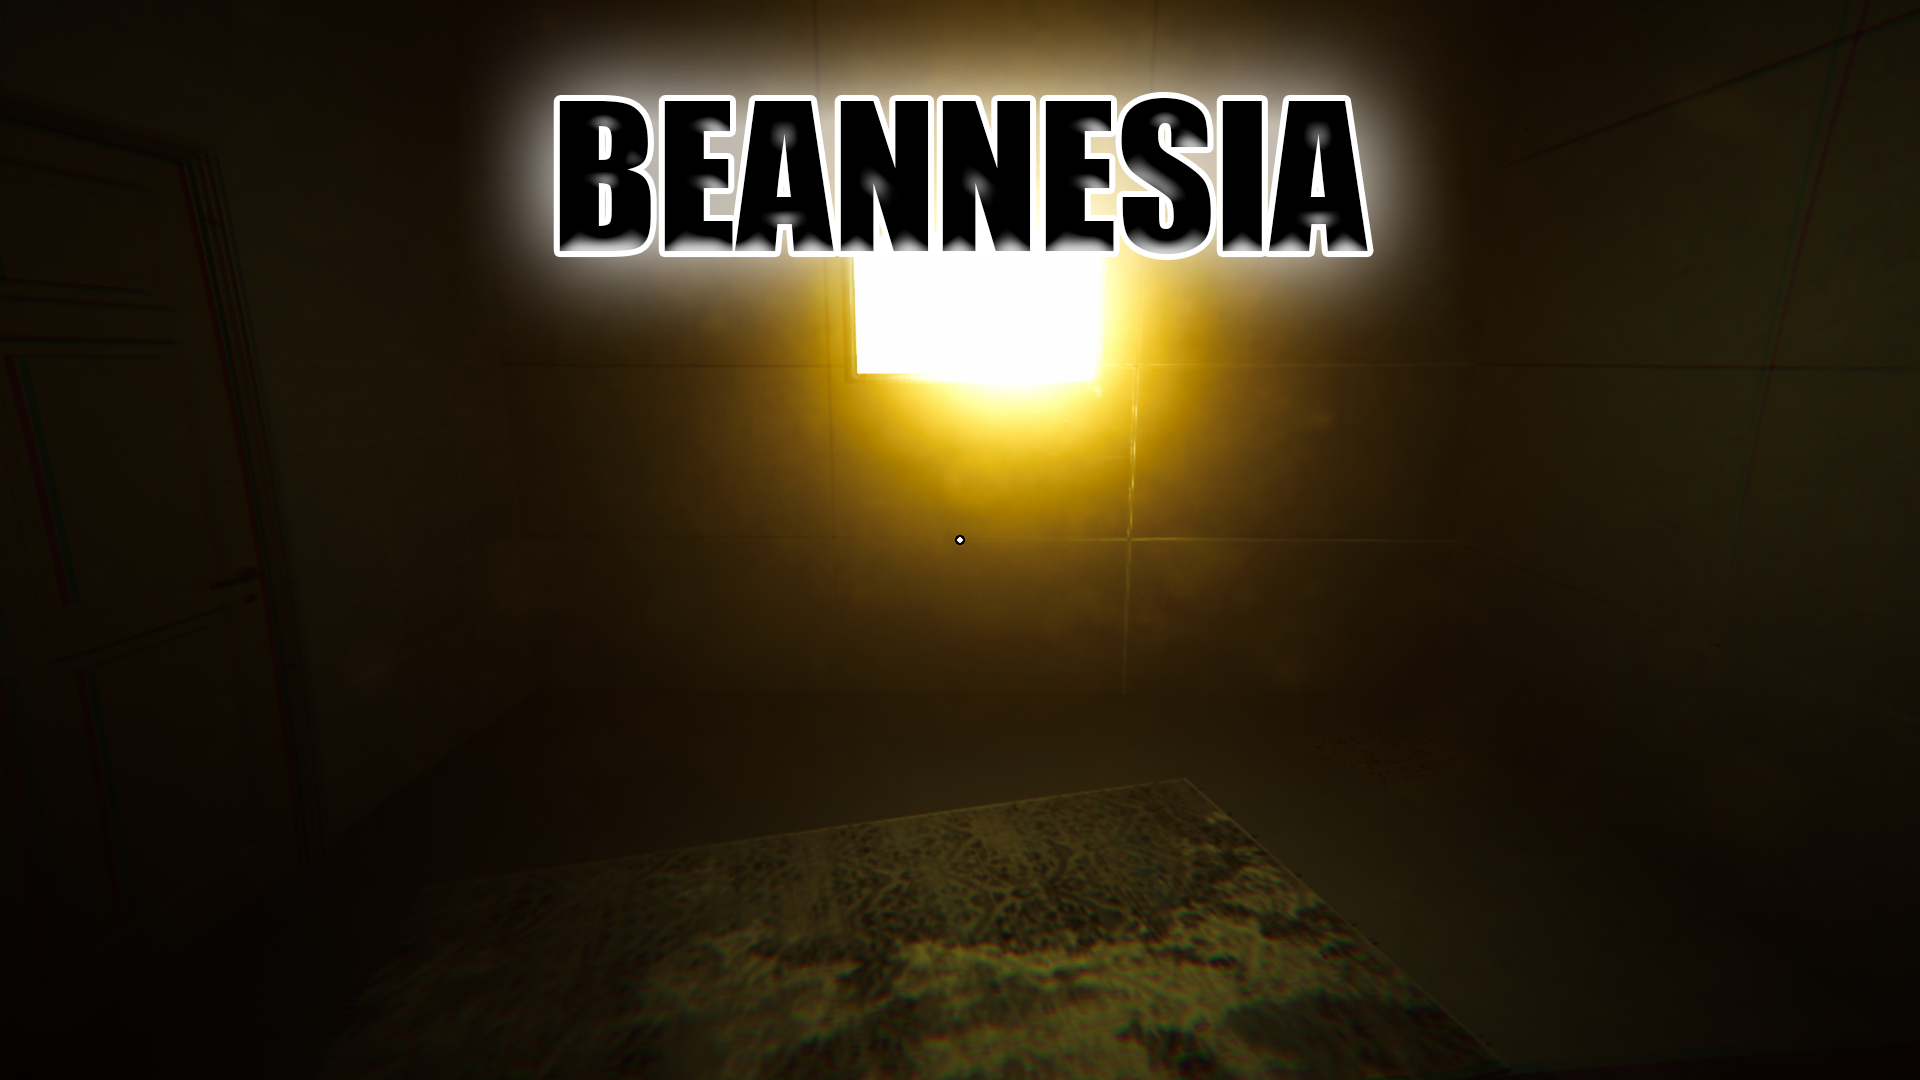 Beannesia